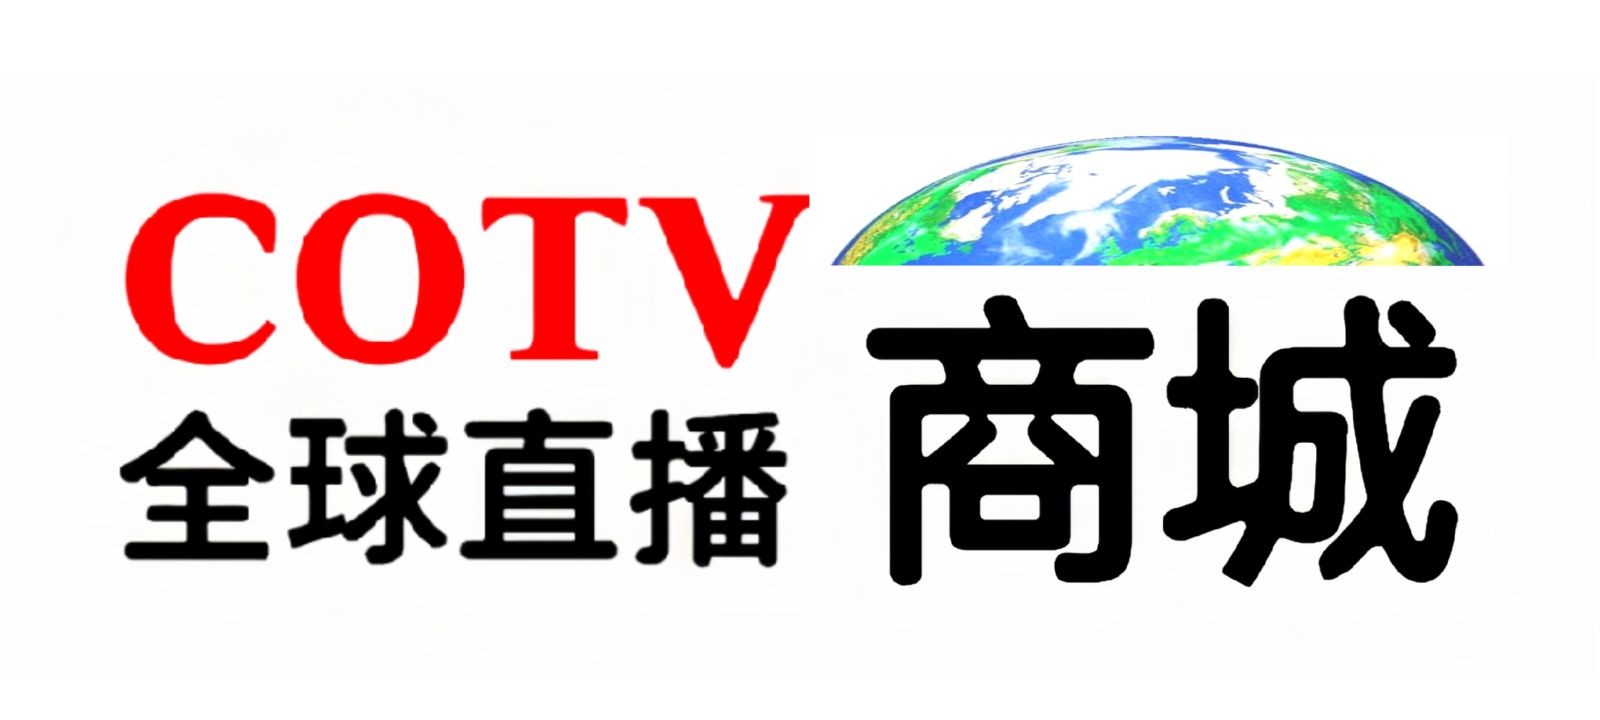 热烈祝贺COTV全球直播商城于2018年06月12日隆重上线运行！